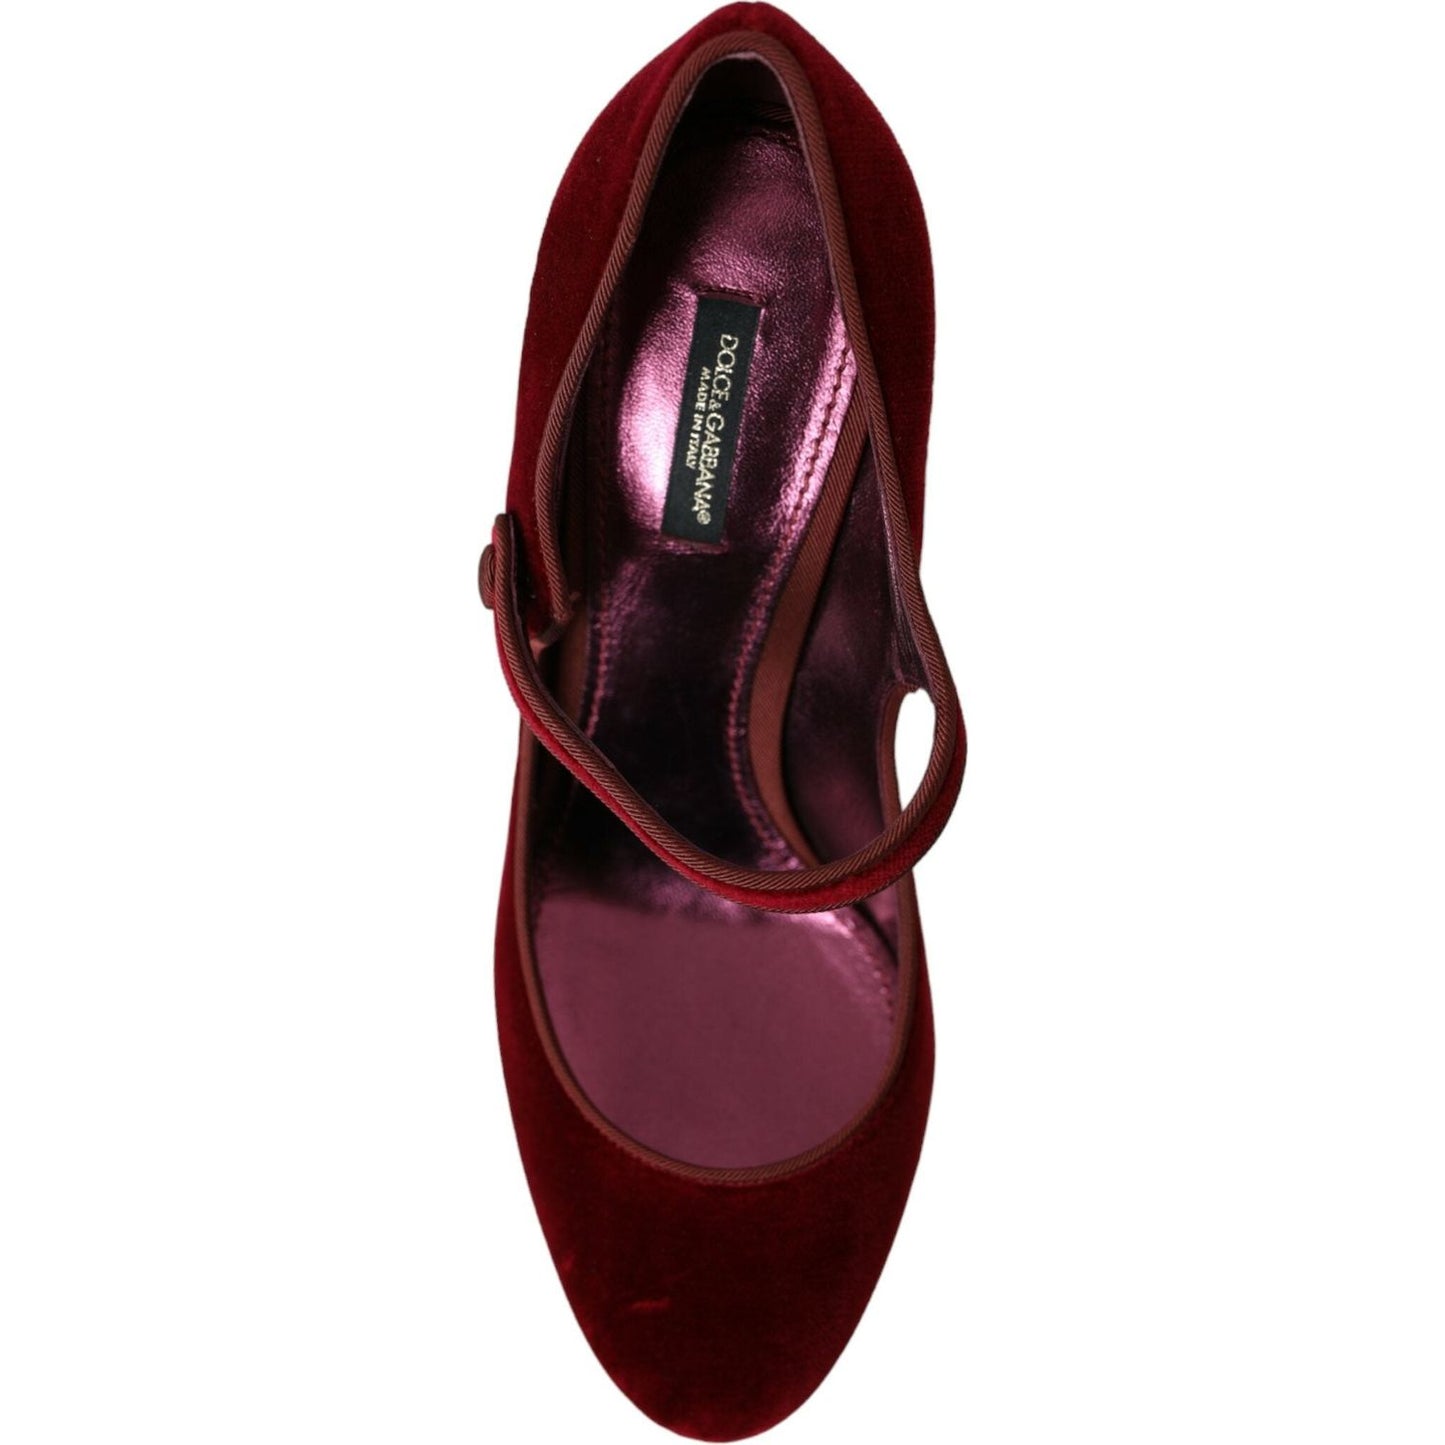 Dolce & Gabbana Red Velvet Gold Crystals Heels Mary Jane Shoes red-velvet-gold-crystals-heels-mary-jane-shoes